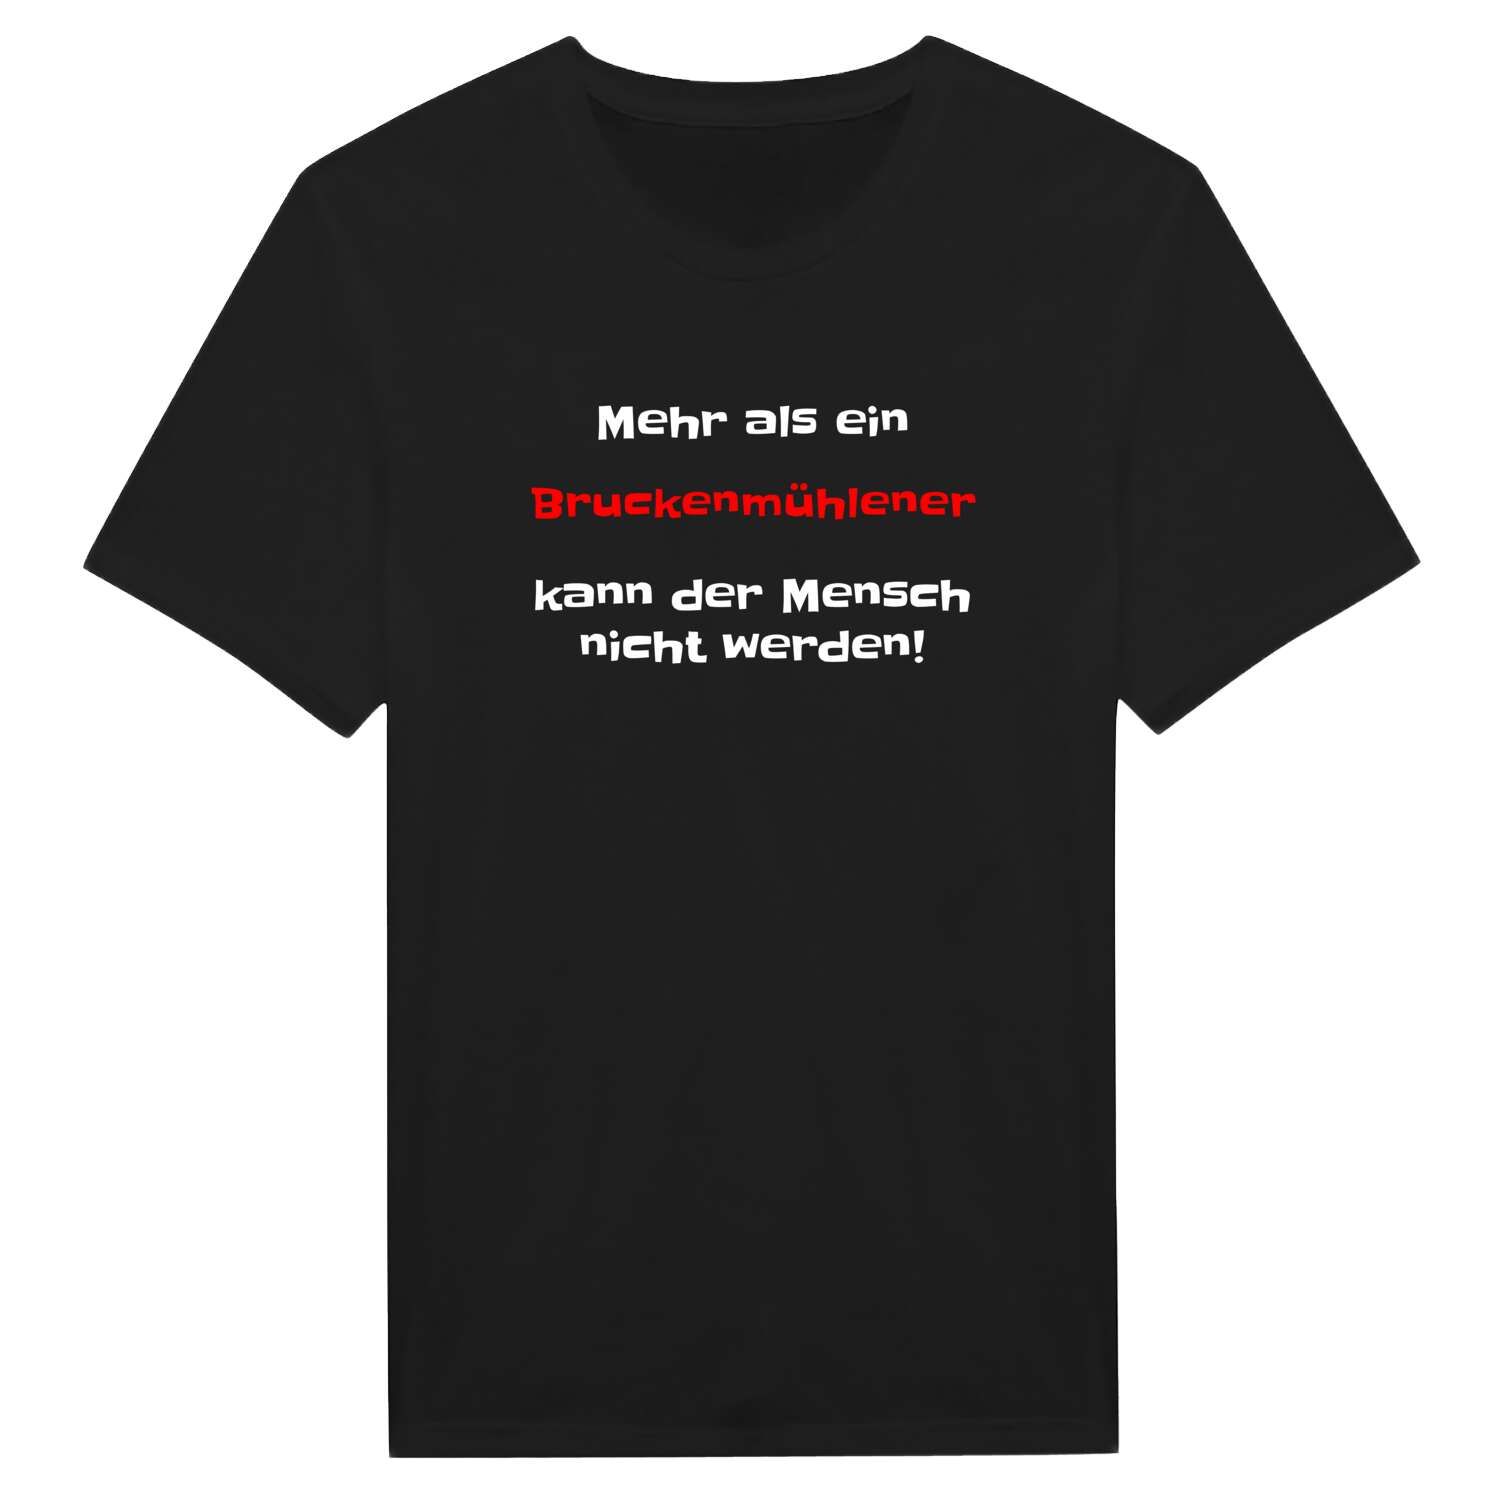 Bruckenmühle T-Shirt »Mehr als ein«